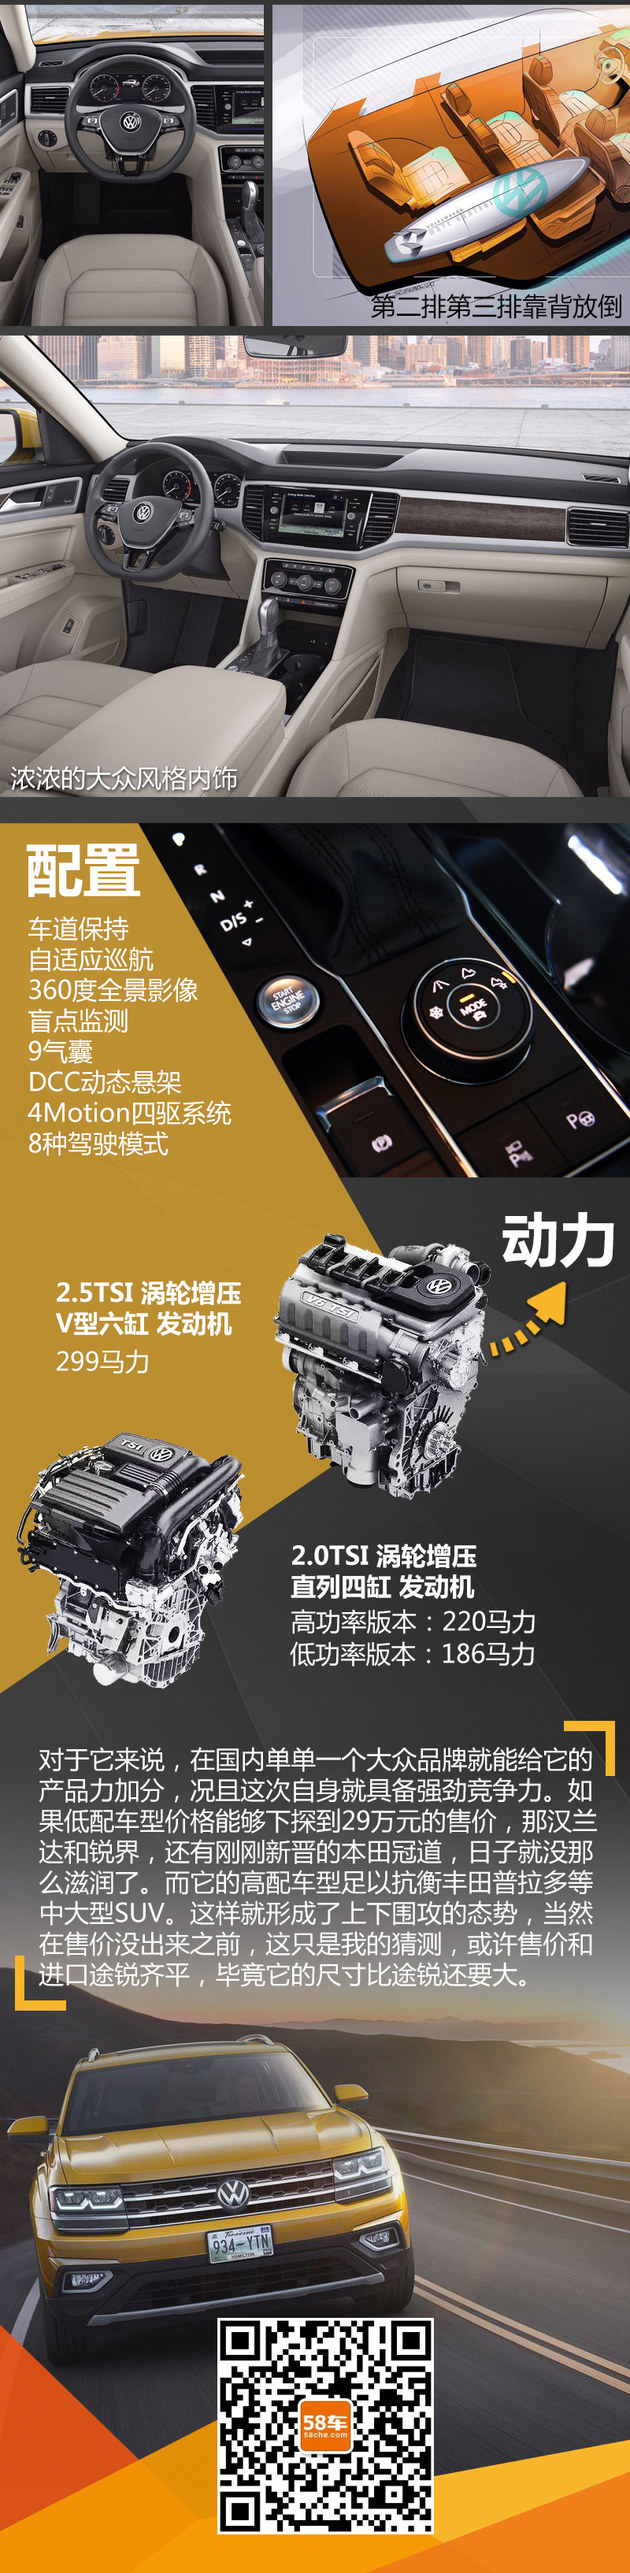 2016广州车展深一度 大众全新中大型SUV